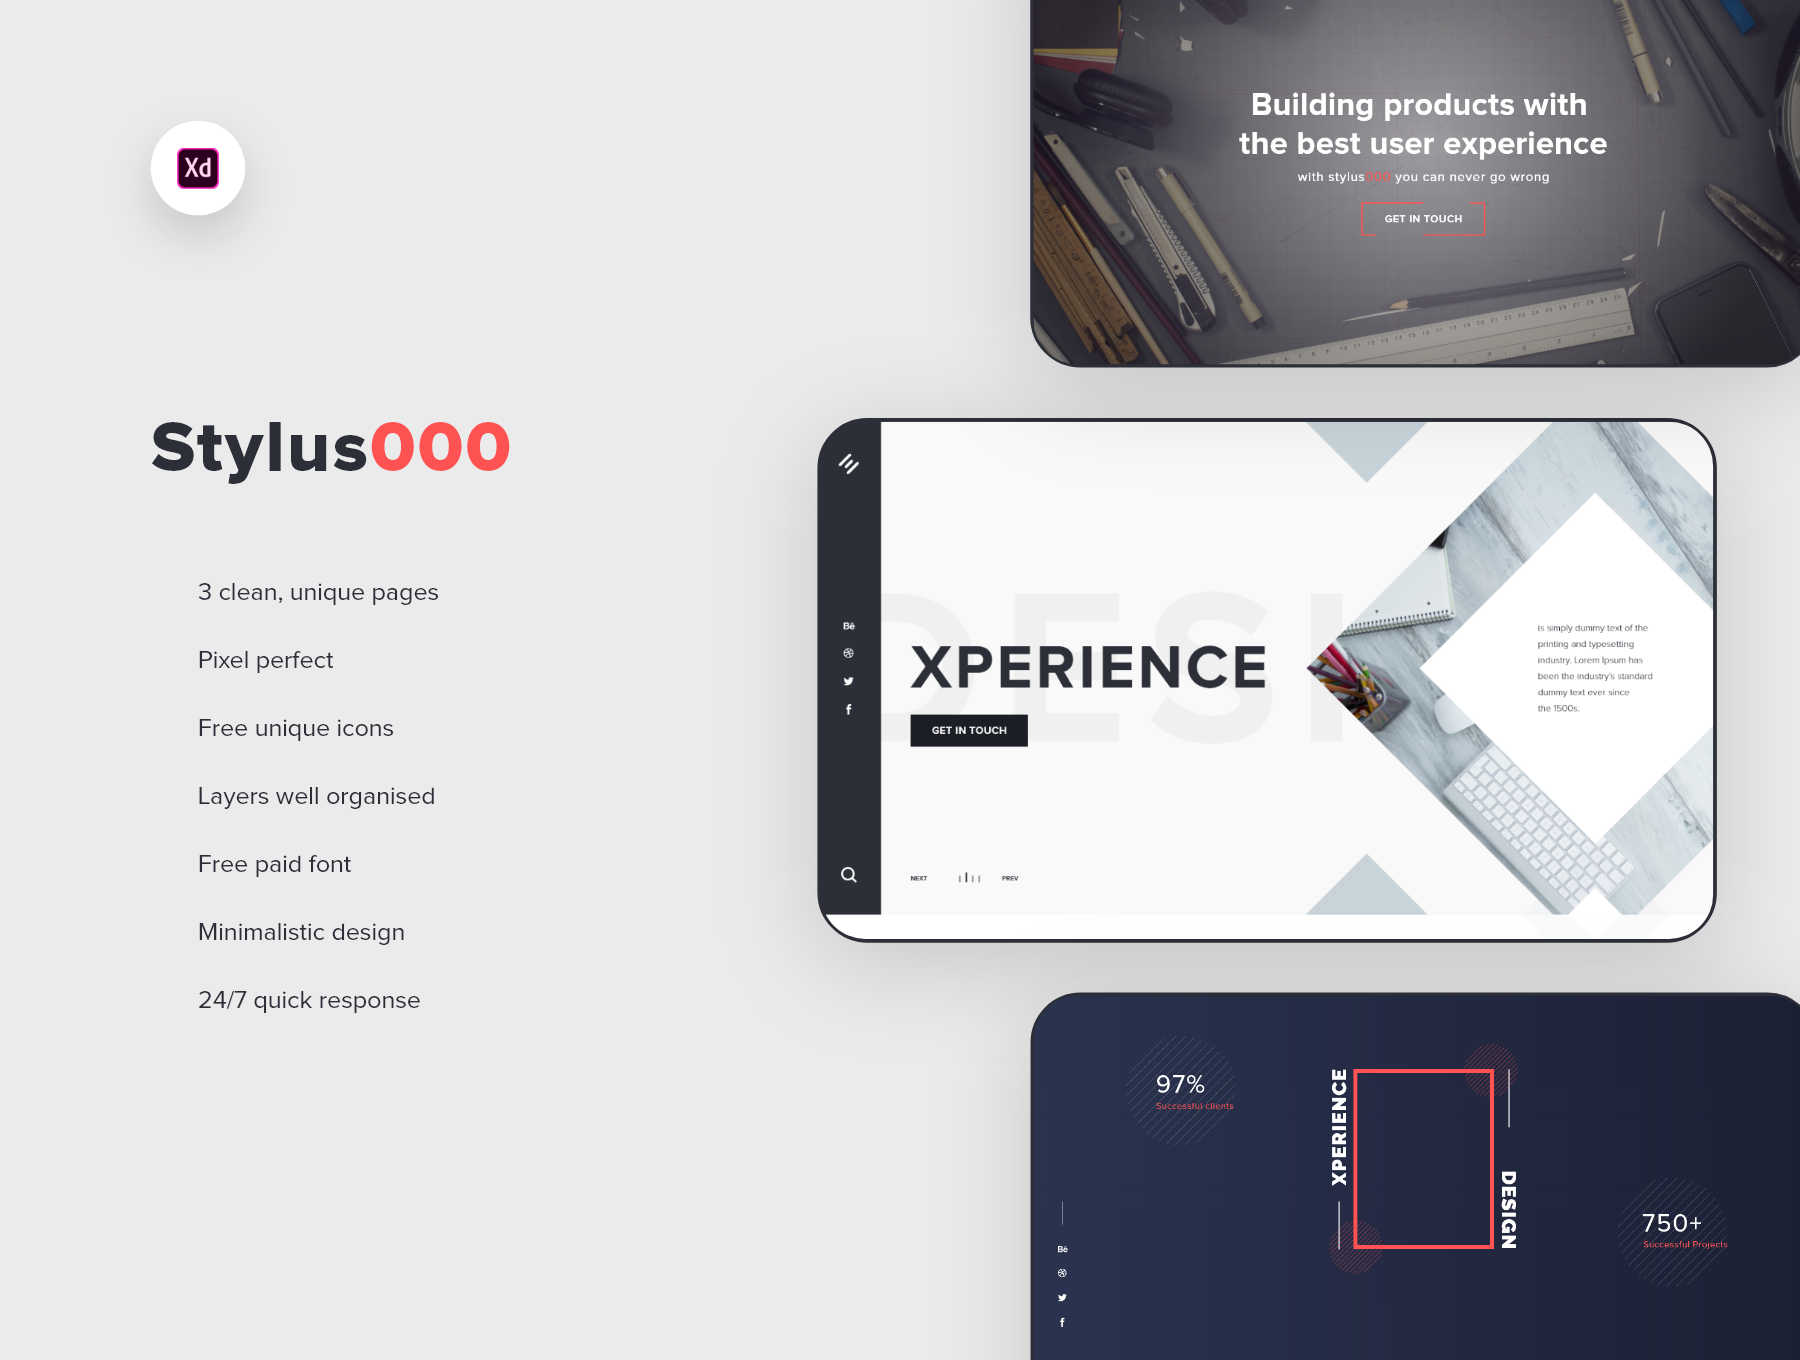 Stylus000 自由职业创意机构设计公司创意登陆页面网站